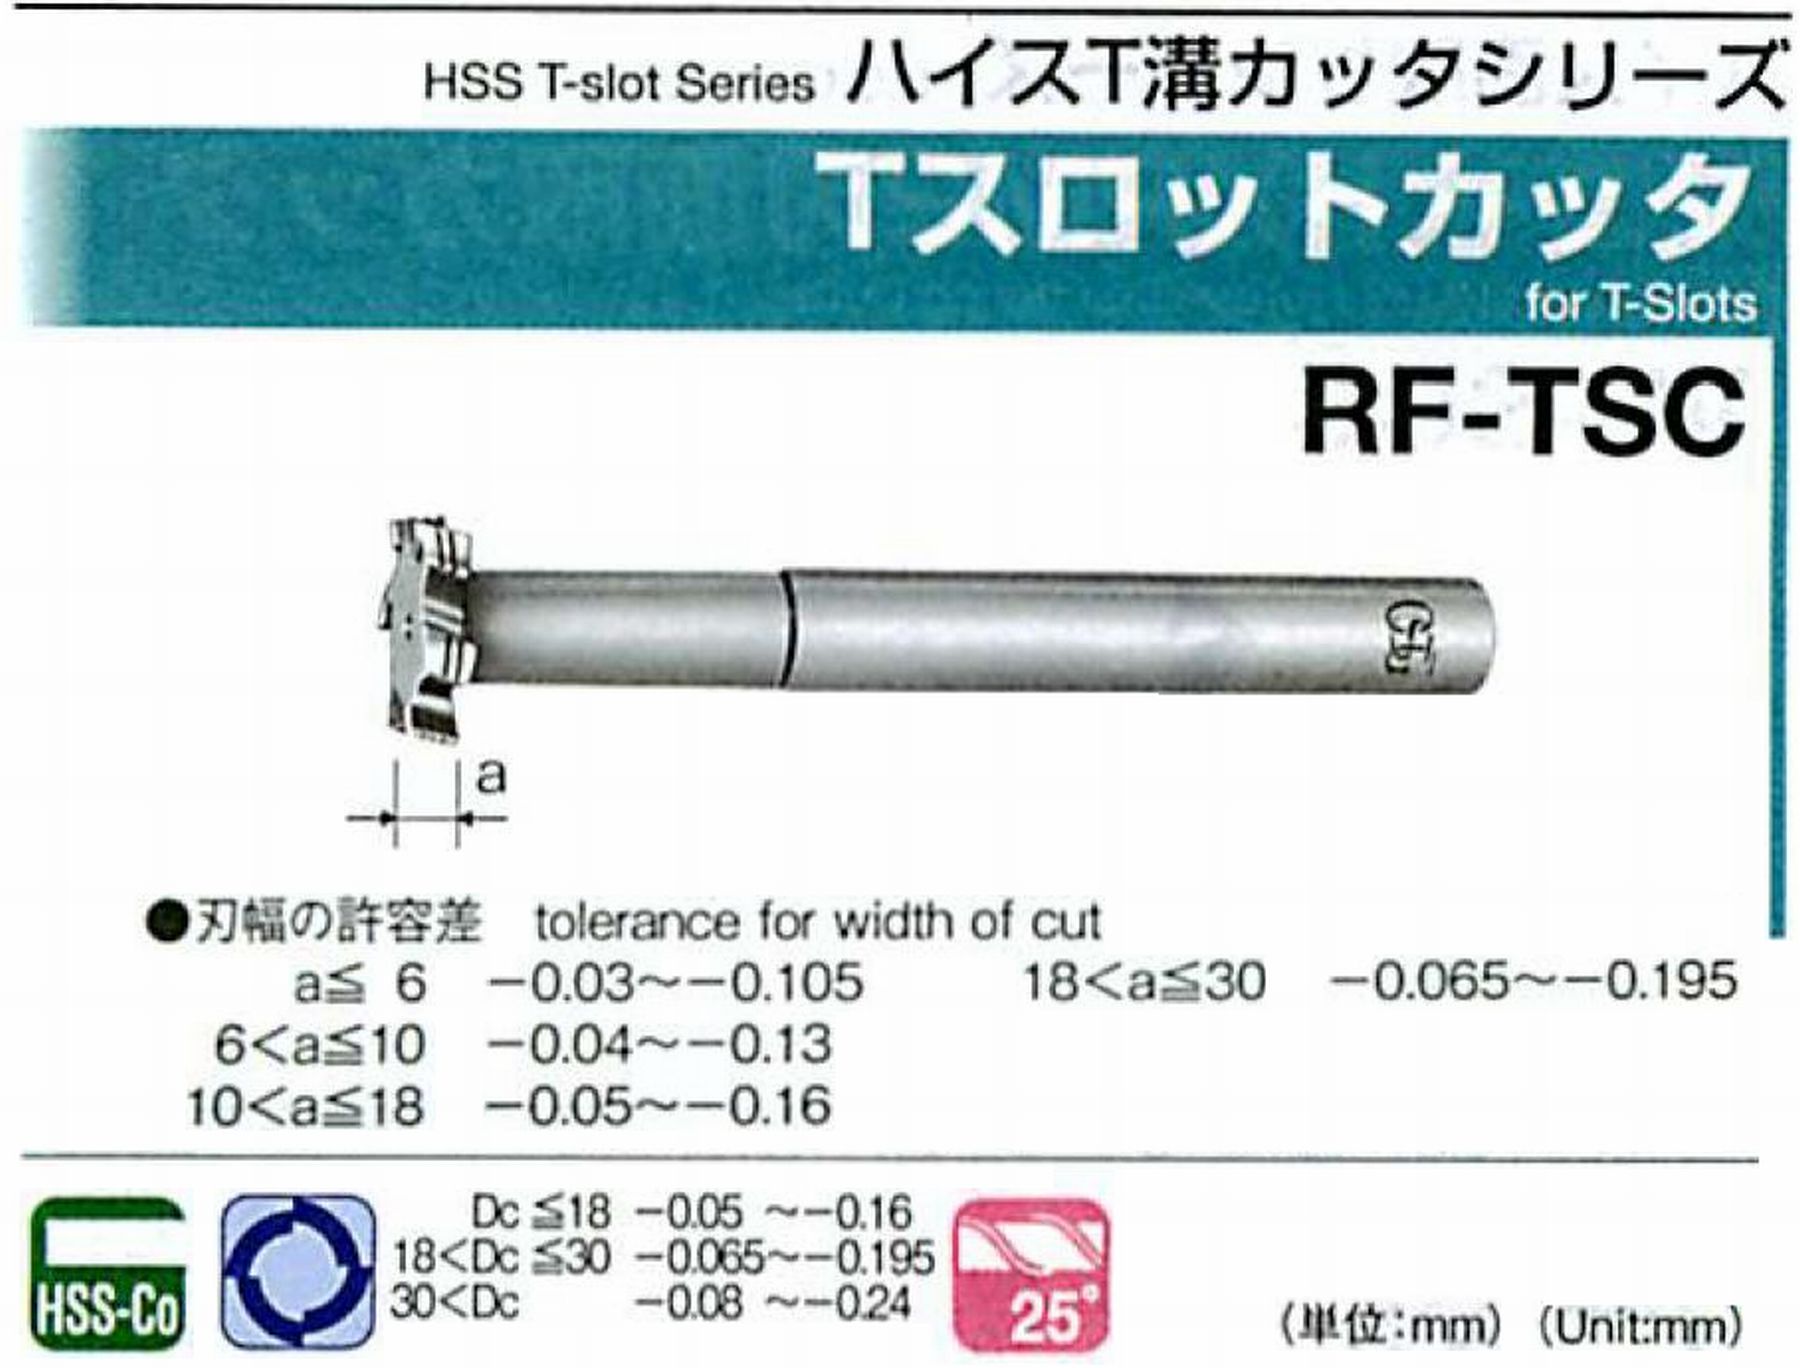 オーエスジー/OSG Tスロットカッタ RF-TSC 外径15 刃幅5 全長120 シャンク径12mm 首下長35 首径8 刃数4